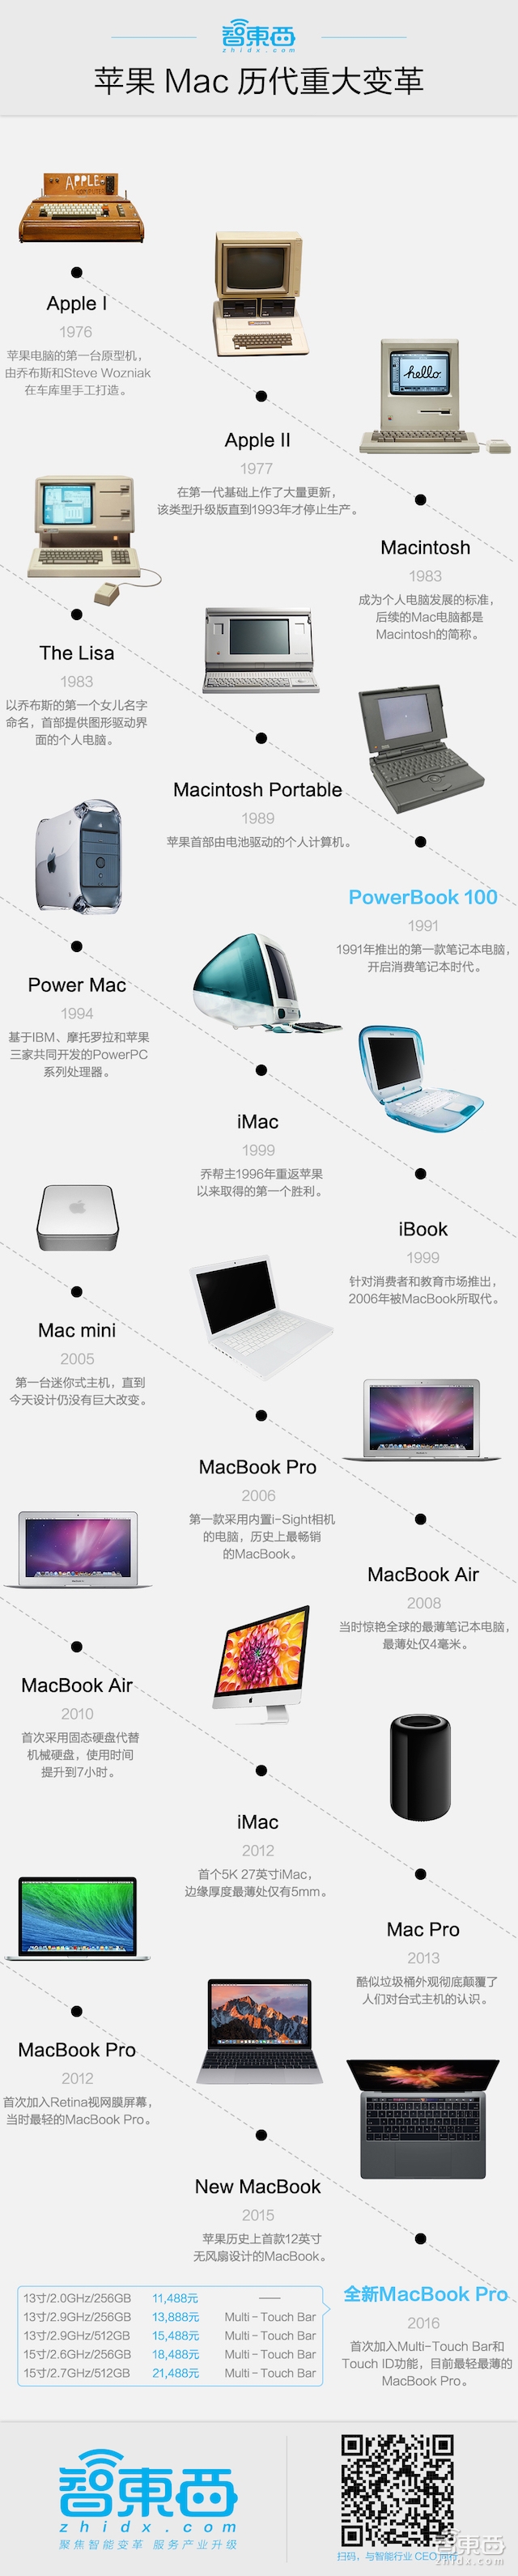 看完昨晚苹果MacBook Pro发布 段子手们都不淡定了！